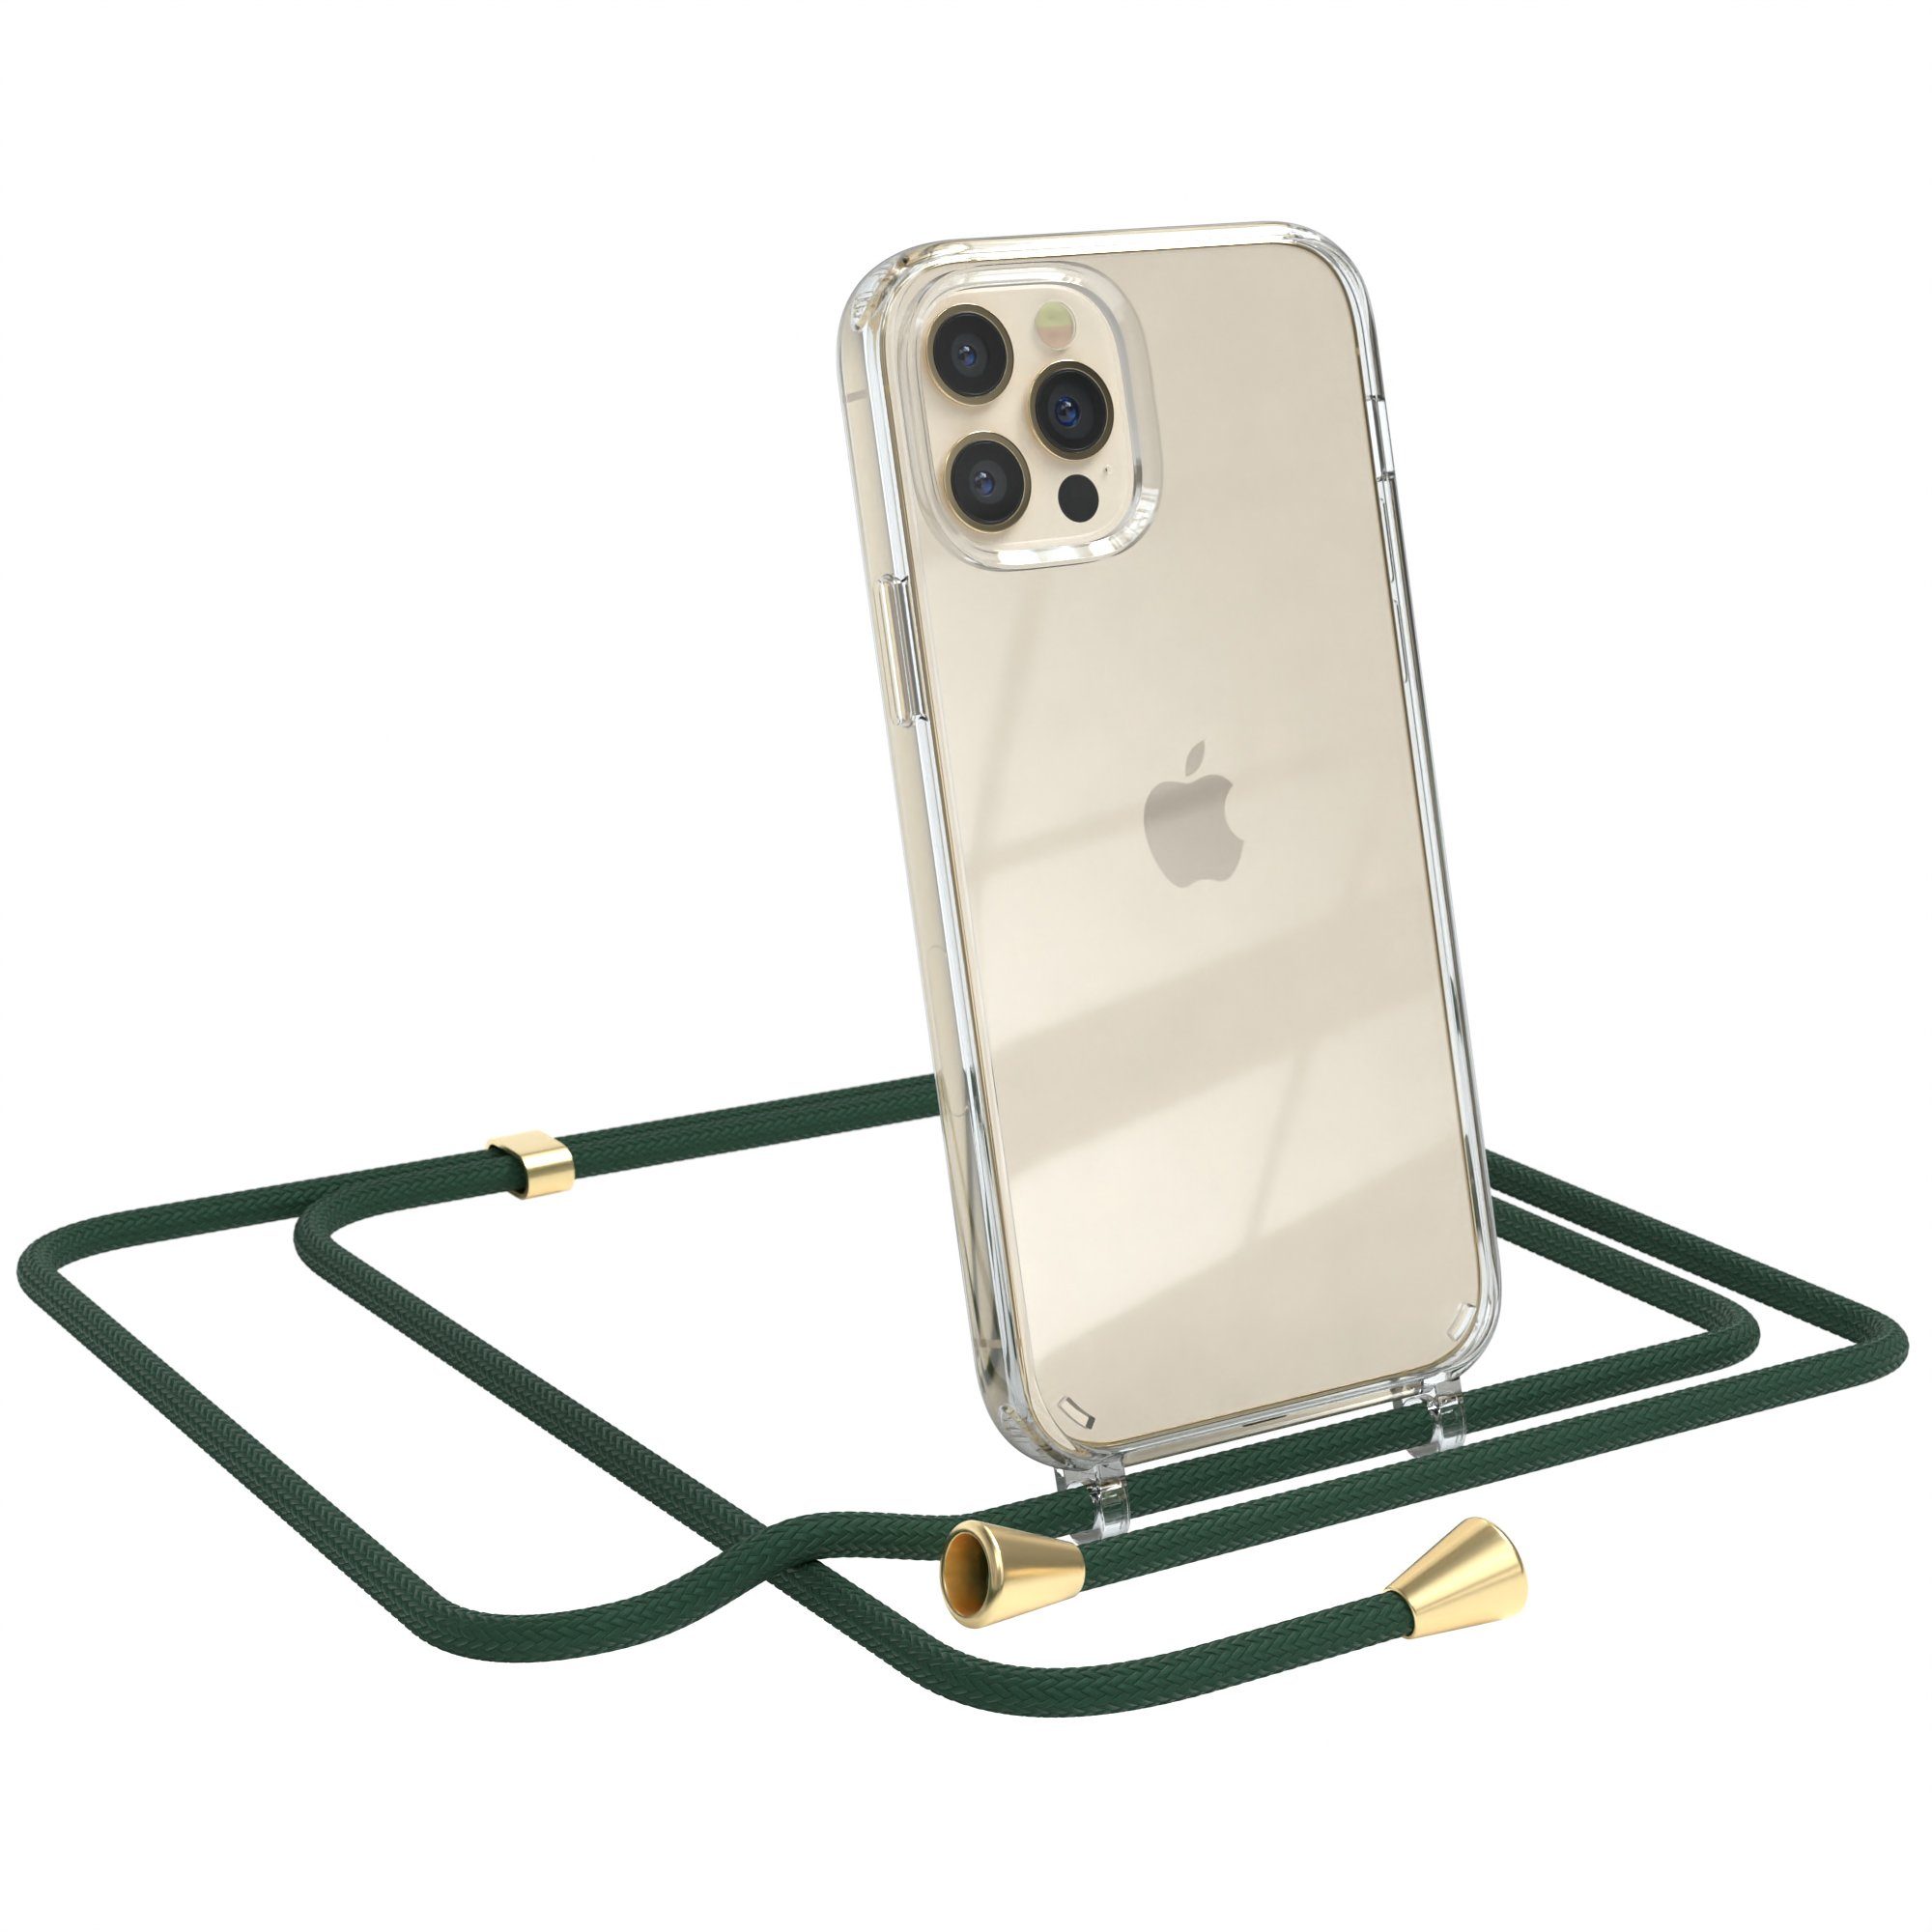 EAZY CASE Handykette Hülle mit Kette für Apple iPhone 12 / 12 Pro 6,1 Zoll,  Kettenhülle zum Umhängen Tasche Handykordel Slimcover Grün Clips Gold